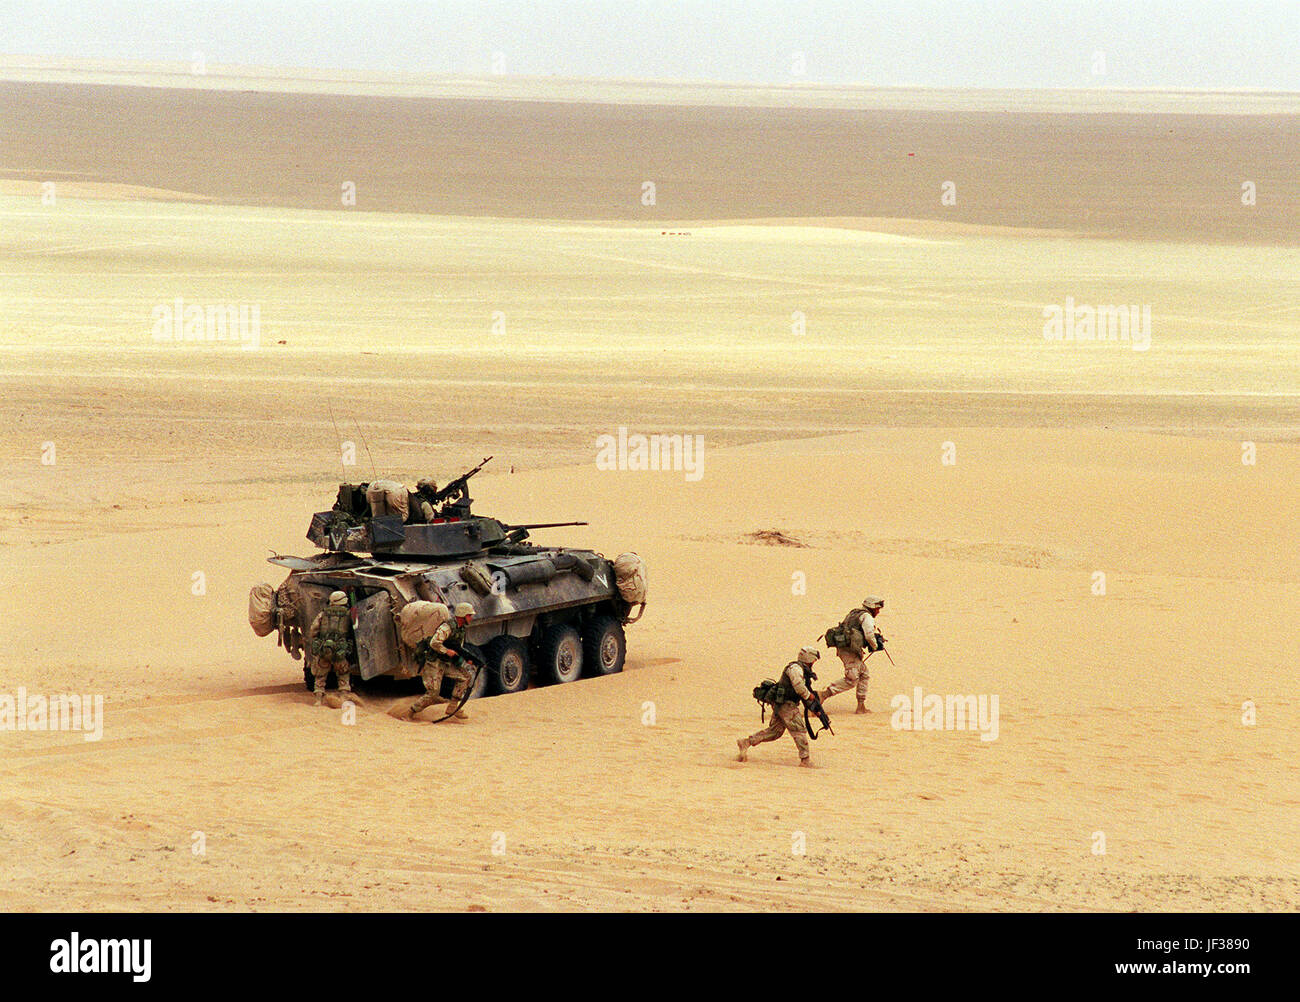 000408-D-9880W-104 US Marine Corps Gewehrschützen bereitstellen von einem Light Armored Vehicle (LAV-25) während einer live-Feuer-Übung auf der Udairi-Ausbildung-Range im Norden Kuwaits am 8. April 2000.  Nach der Zerstörung der simulierten feindlichen LKW mit standhaft Turm montiert 25 mm Kette, bereitgestellt der LAV sechs Marine-Scharfschützen mit dem restlichen simulierten feindlichen Personal beschäftigen.  Der LAV ist der 1. Licht Armored Reconnaissance Battalion, 15. Marine Expeditionary Unit beigefügt.  DoD-Foto von R. D. Ward.  (Freigegeben) Stockfoto